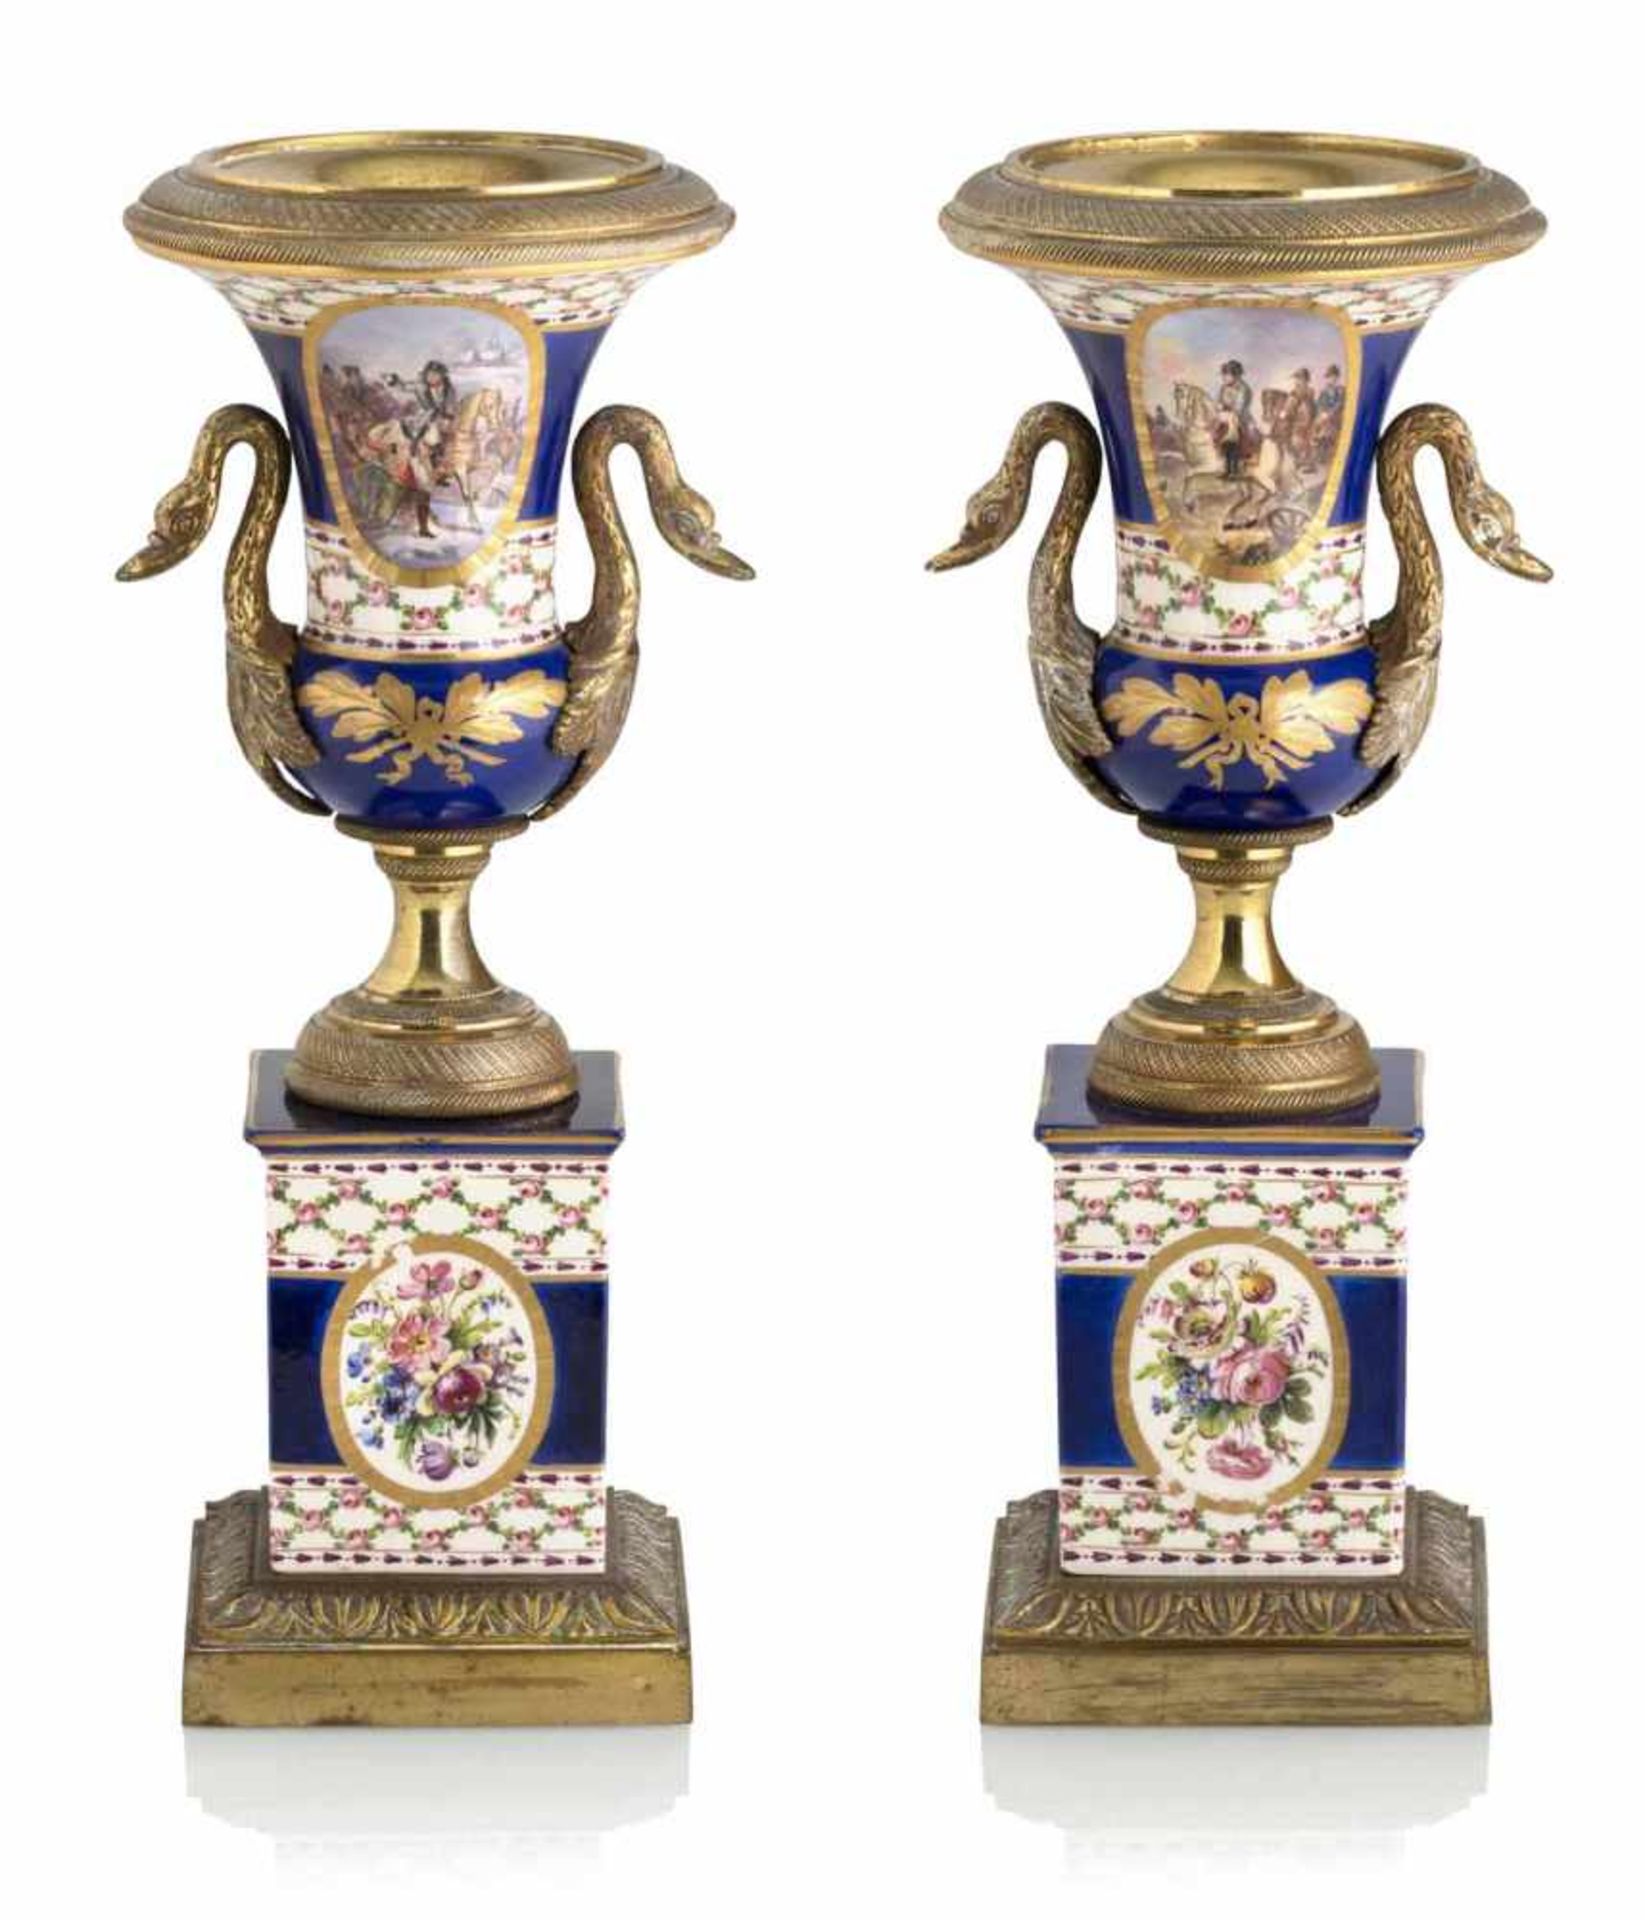 Paar Vasen im Klassizistischen StilFrankreich, Ende 19. JahrhundertH. 36 cmBalustervasen mit